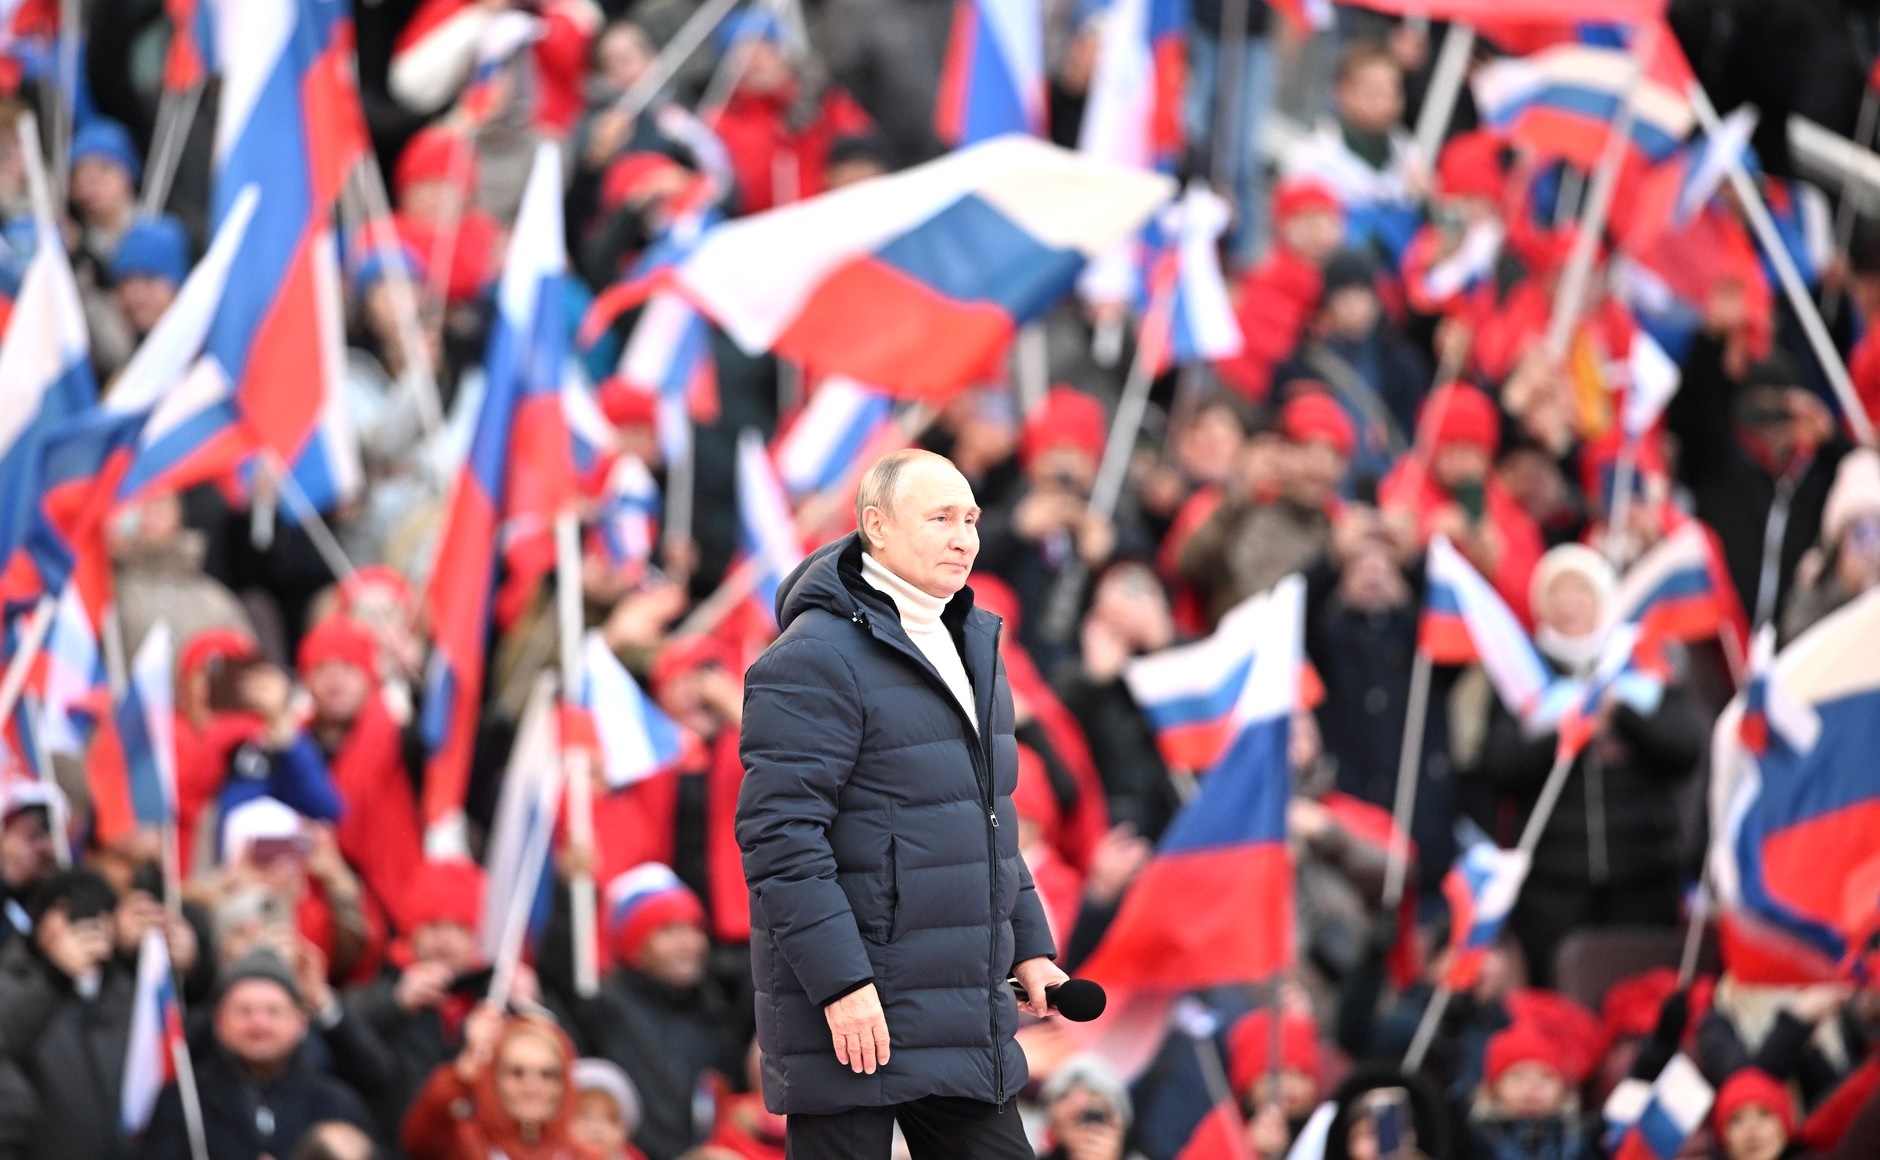 Путин сослался на Священное Писание на митинге за миссию РФ